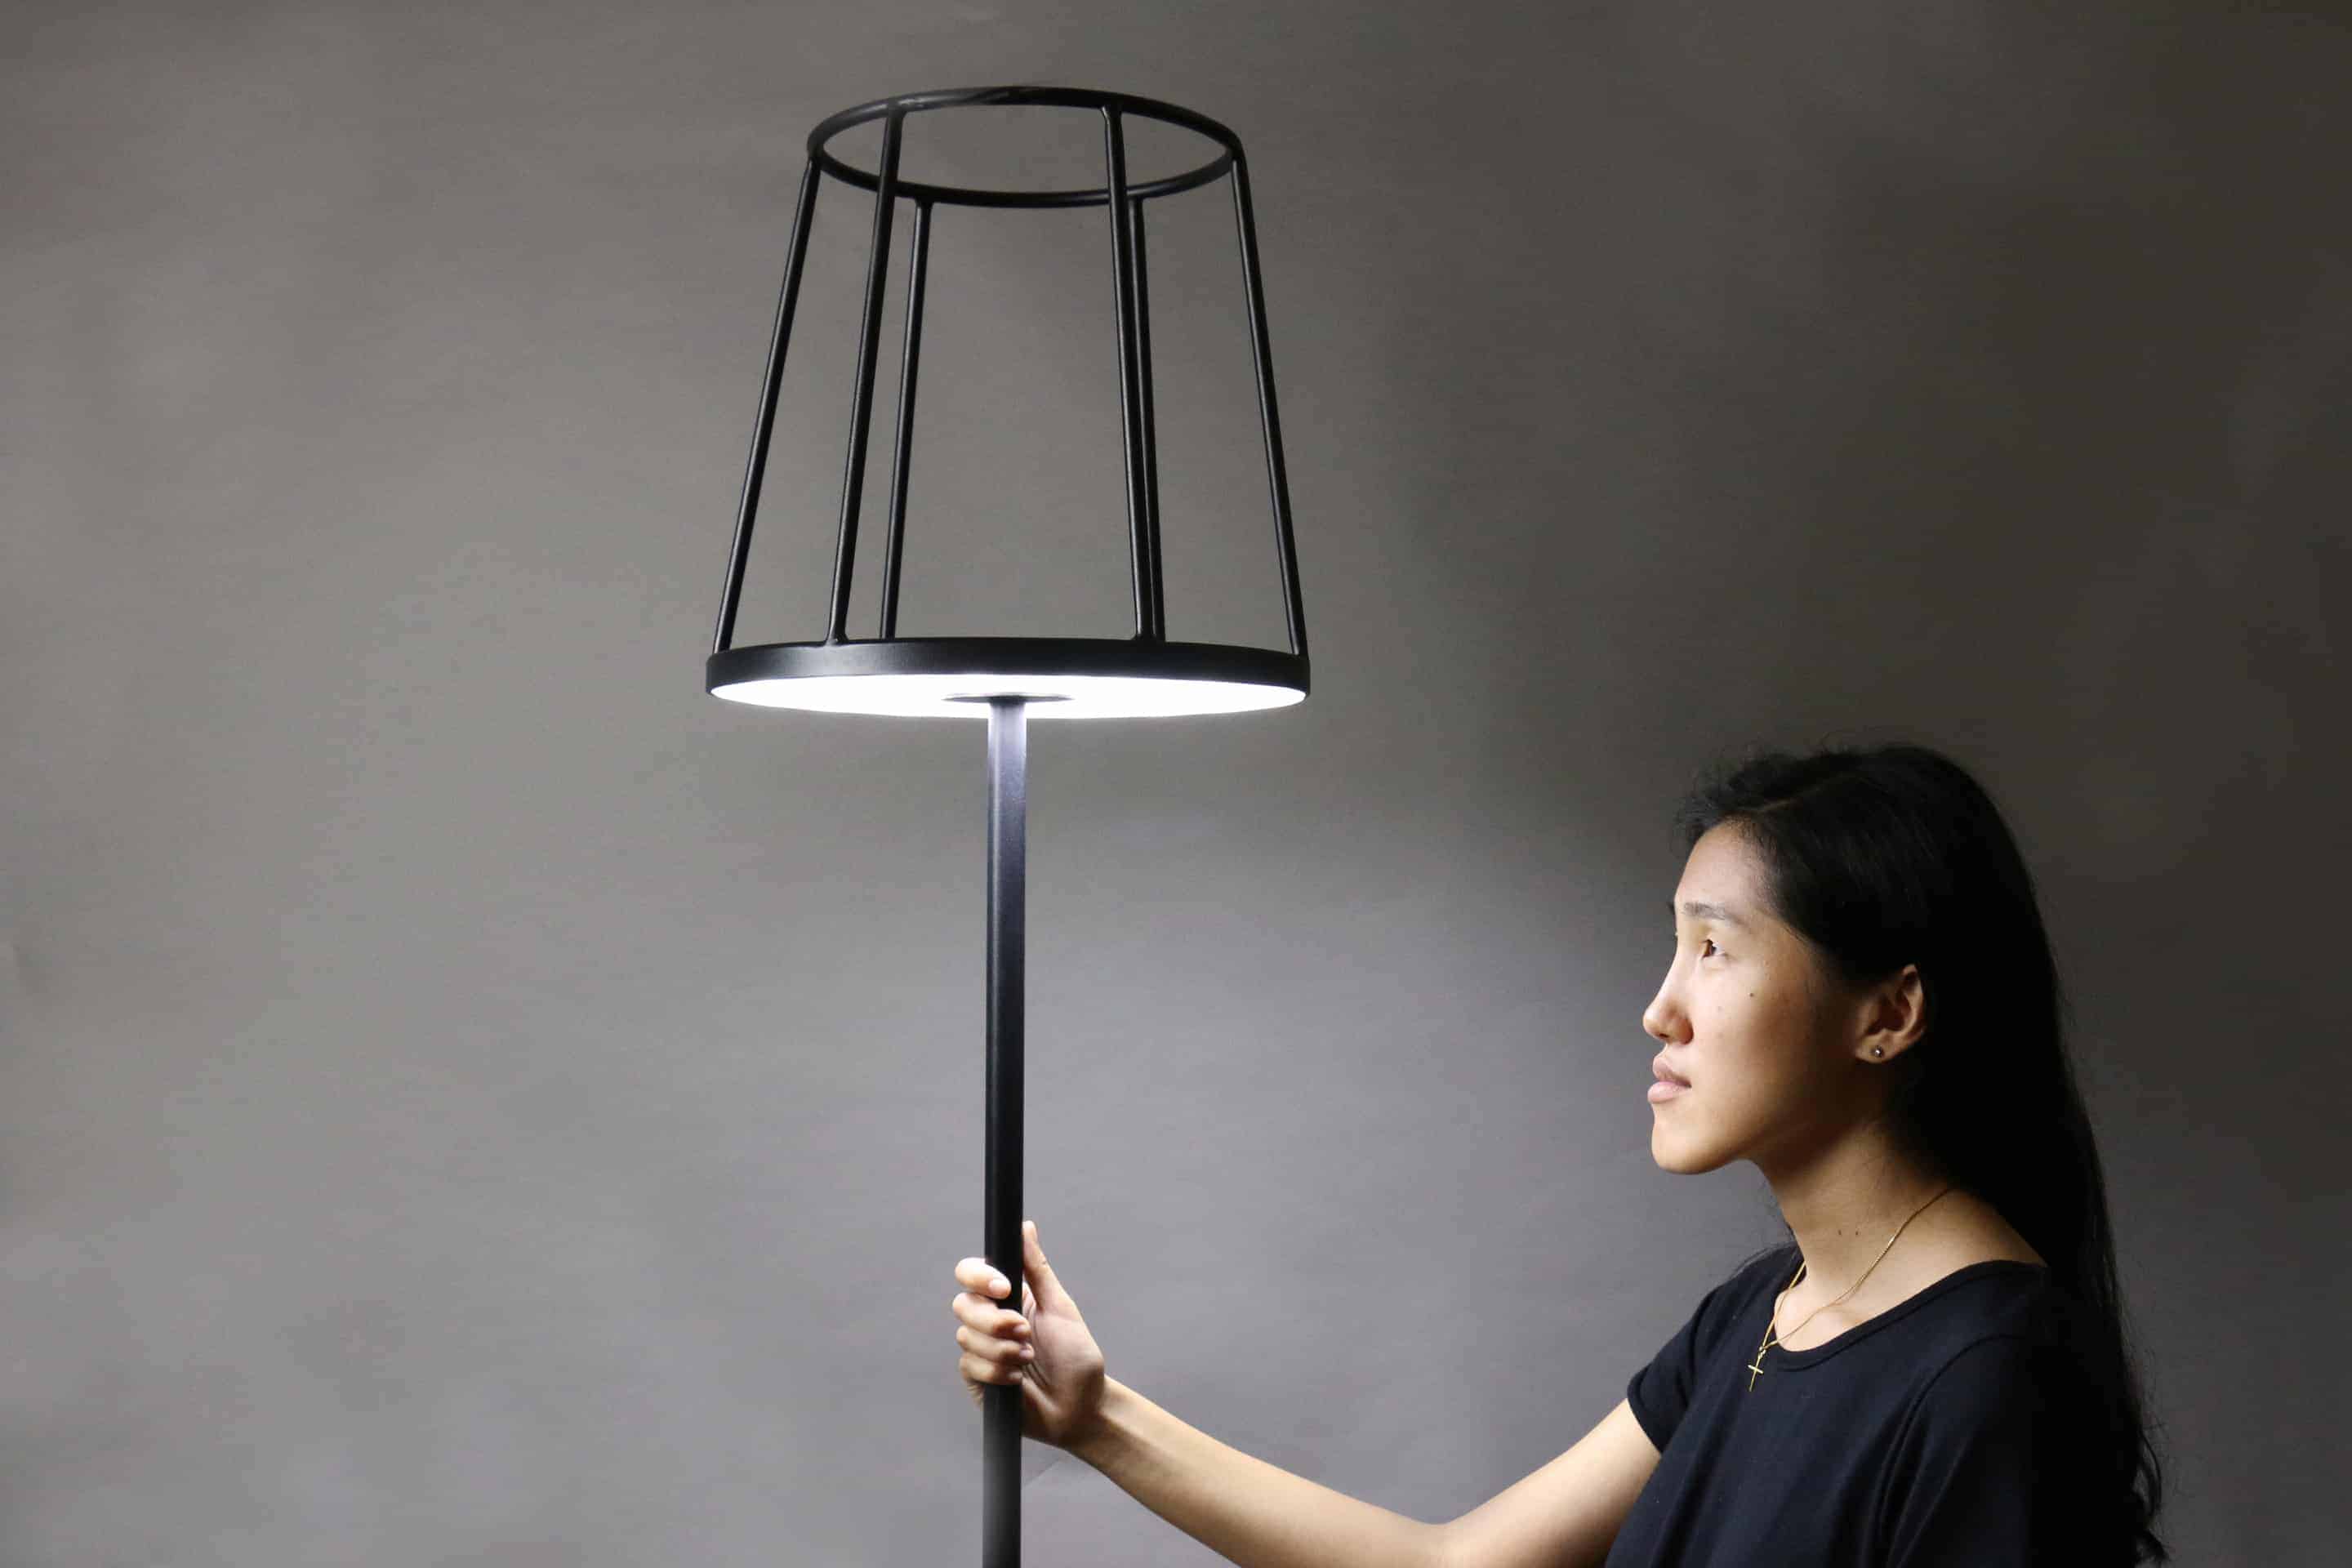 Silhouette Floor Lamp Design Ideas, Silhouette Lampshade Designs